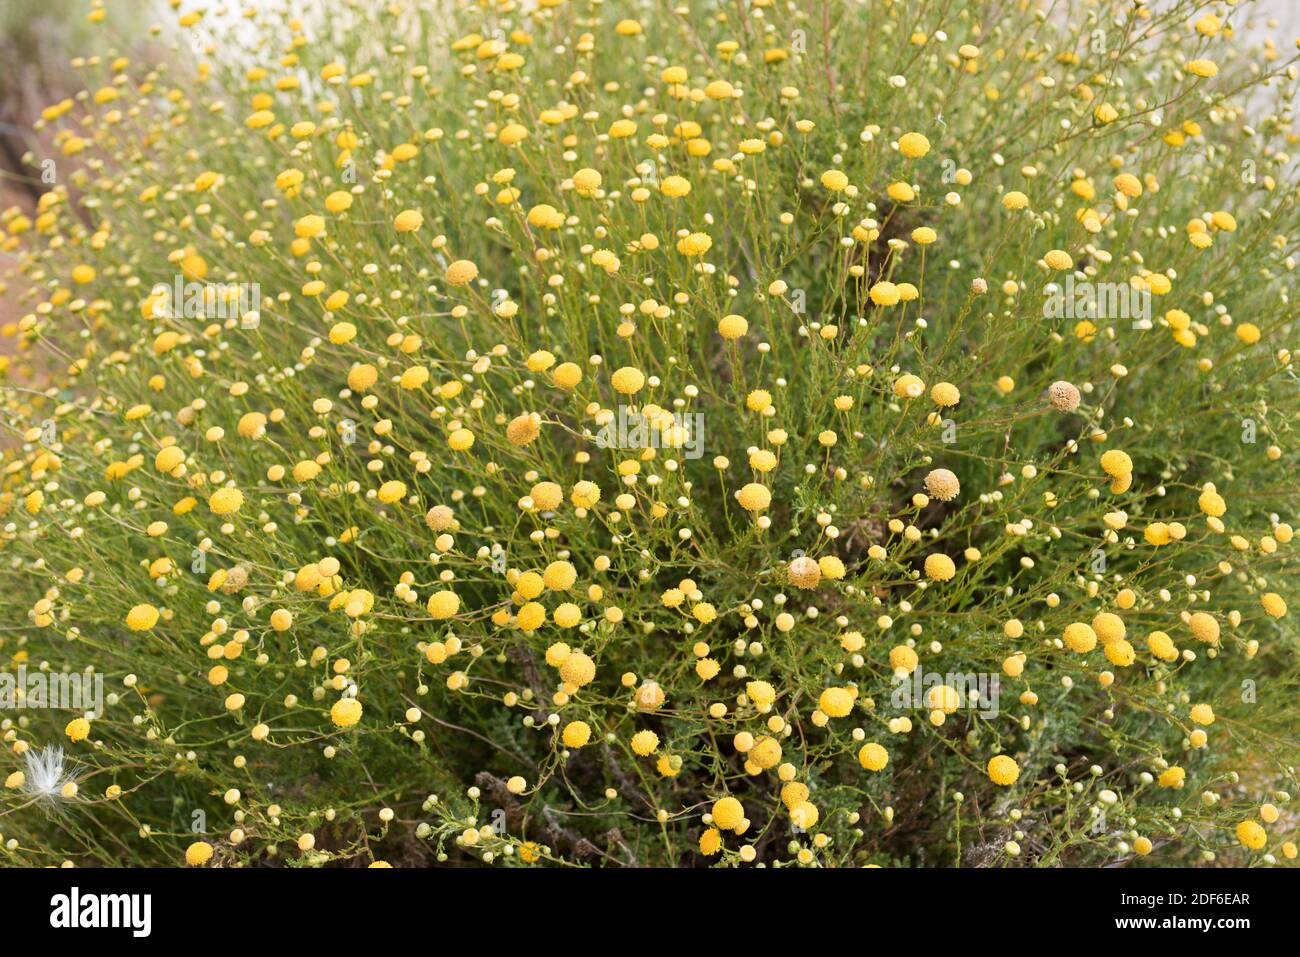 Santolina viscosa ist eine mehrjährige Pflanze, die in Südostspanien endemisch ist. Magnoliophyta. Asteraceae. Dieses Foto wurde in Sorbas, Almeria, Spanien aufgenommen. Stockfoto